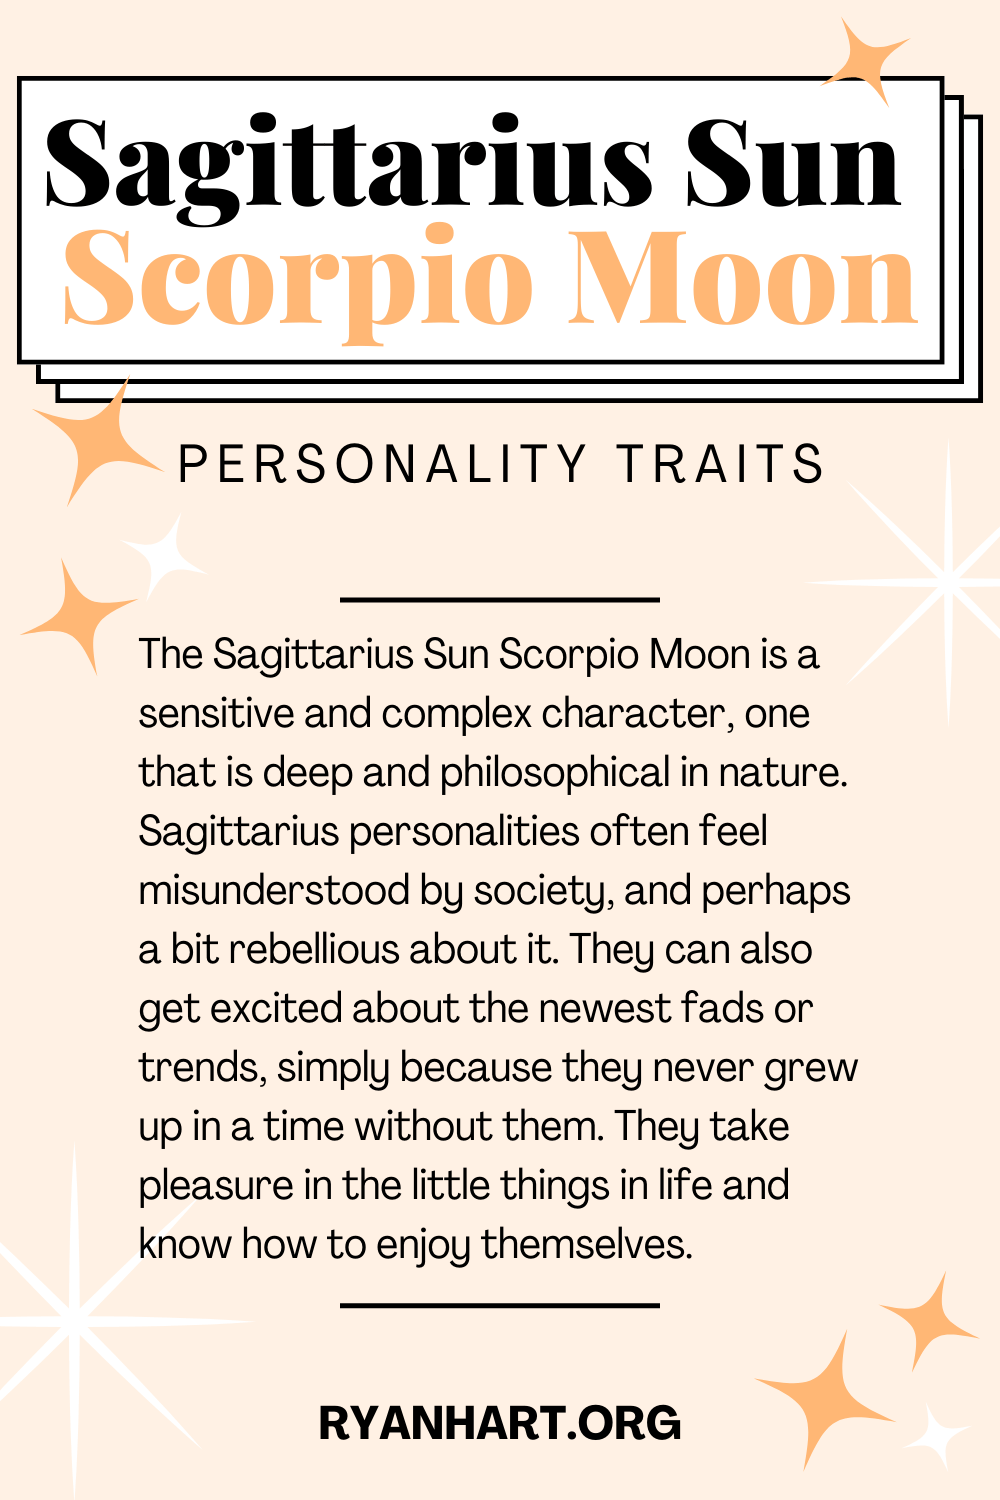  Soleil Sagittaire Lune Scorpion Traits de personnalité